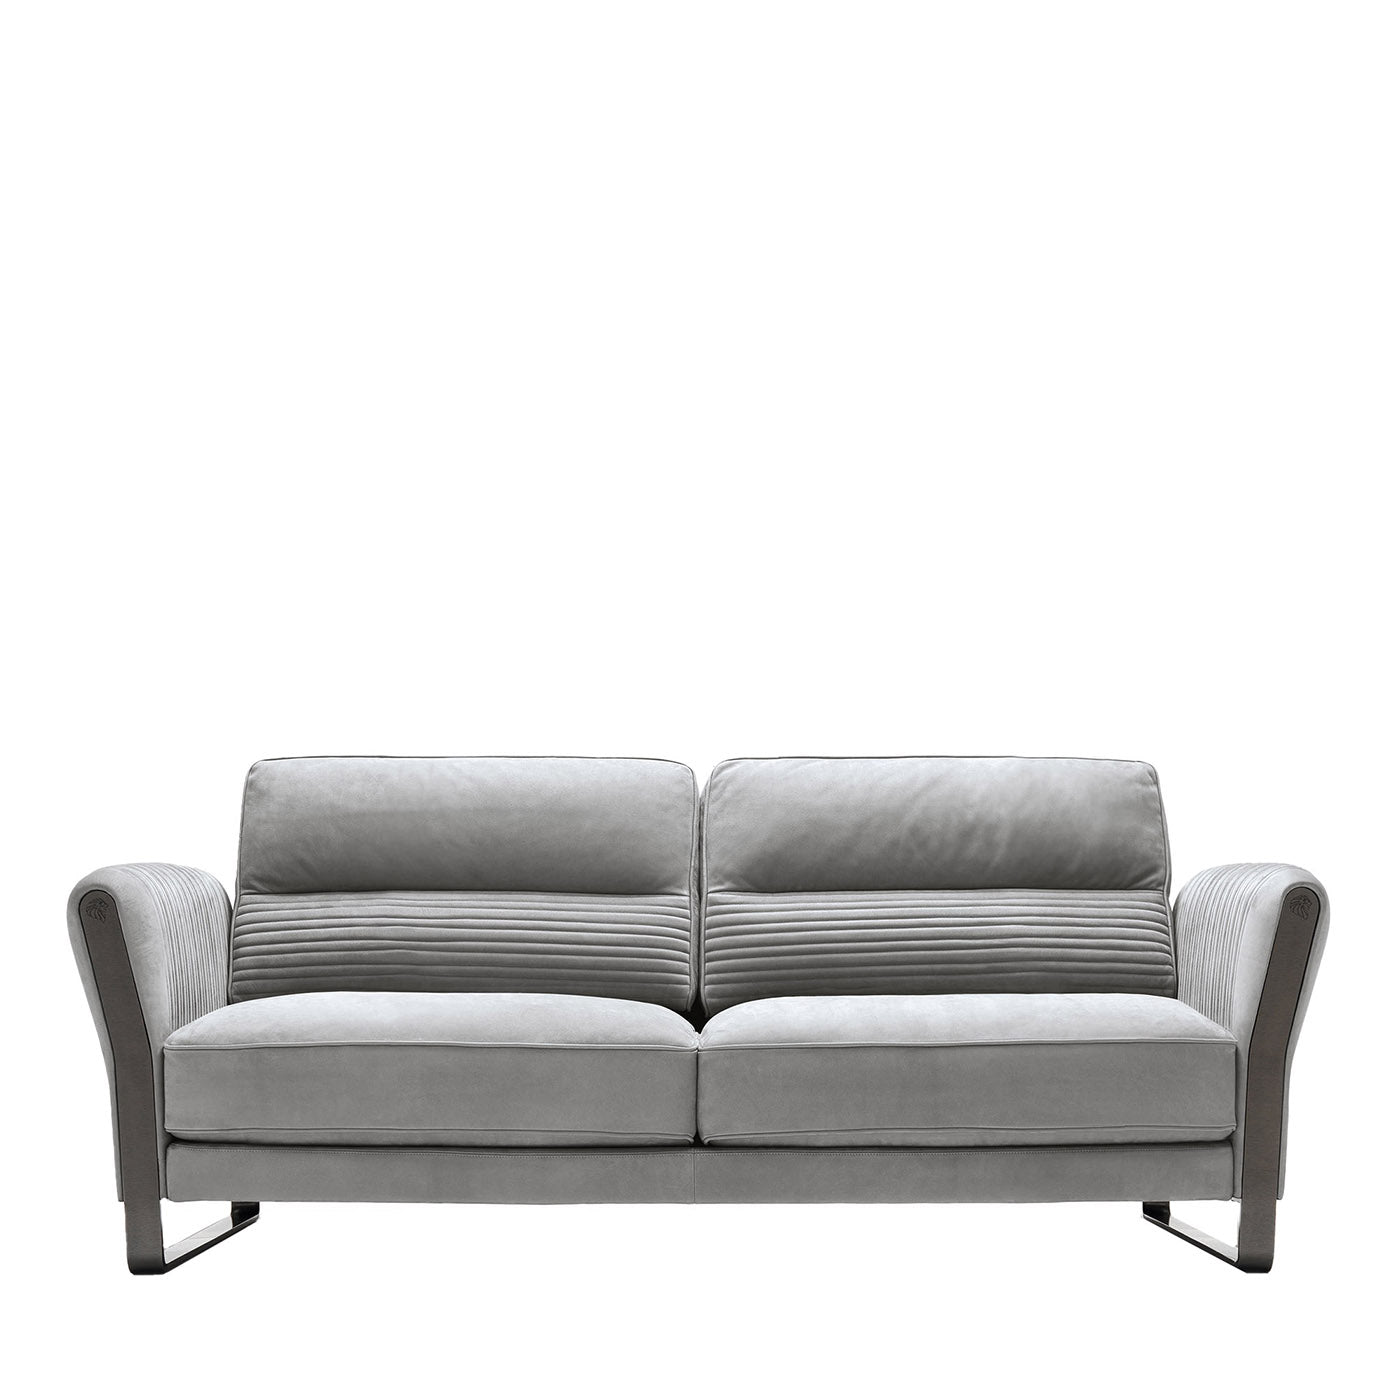 Graues Nabuk-Sofa mit zwei Sitzplätzen - Hauptansicht